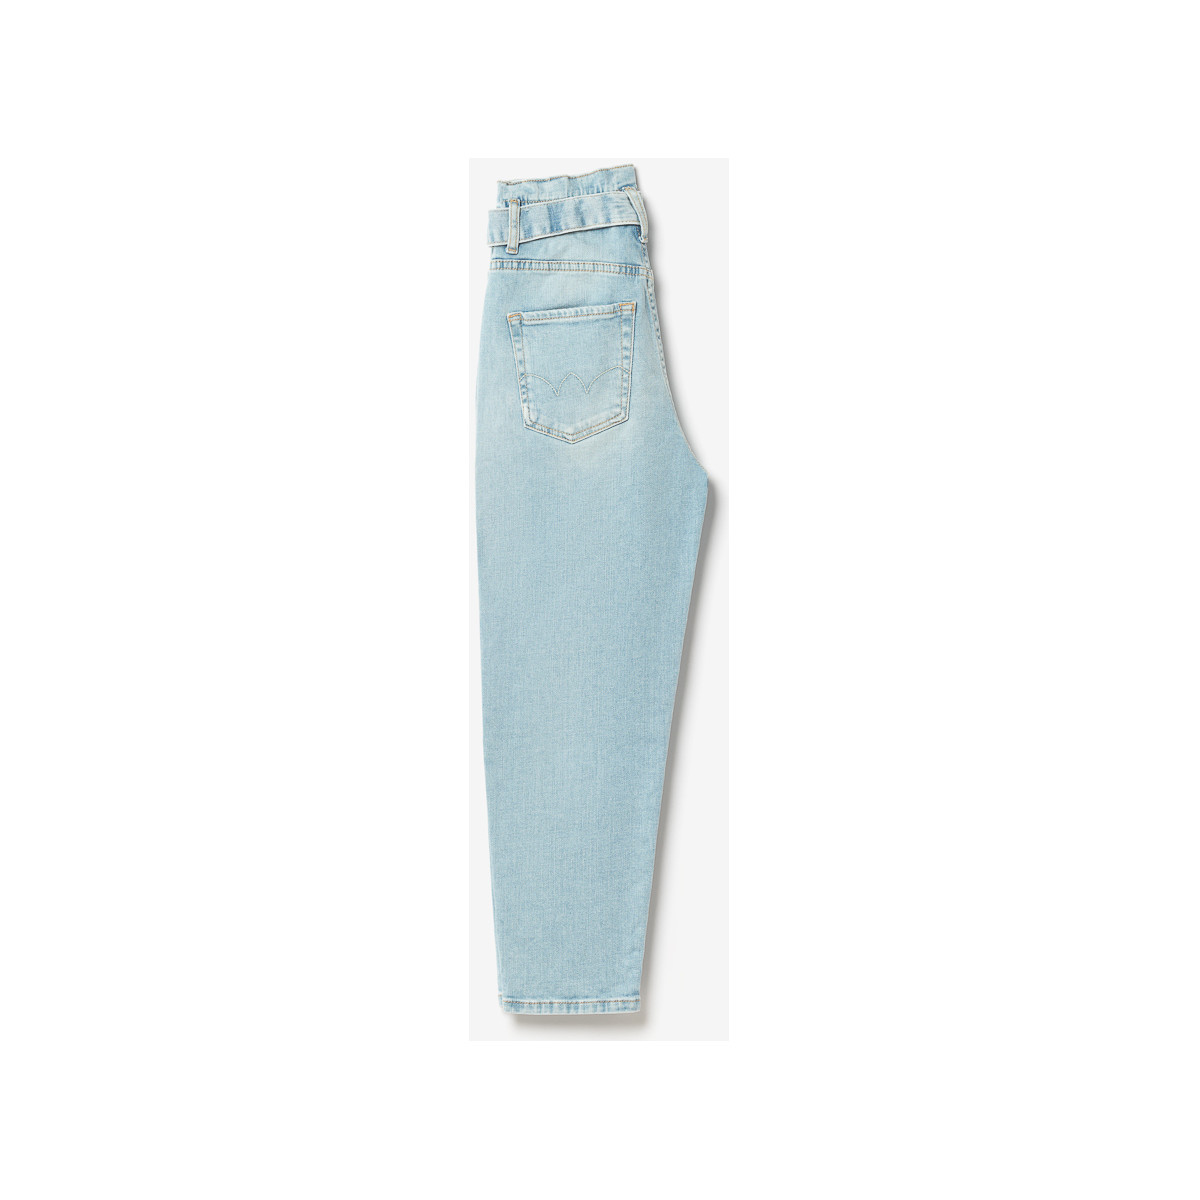 Le Temps des Cerises Bleu Milina boyfit 7/8ème jeans bleu Fot9uqwW